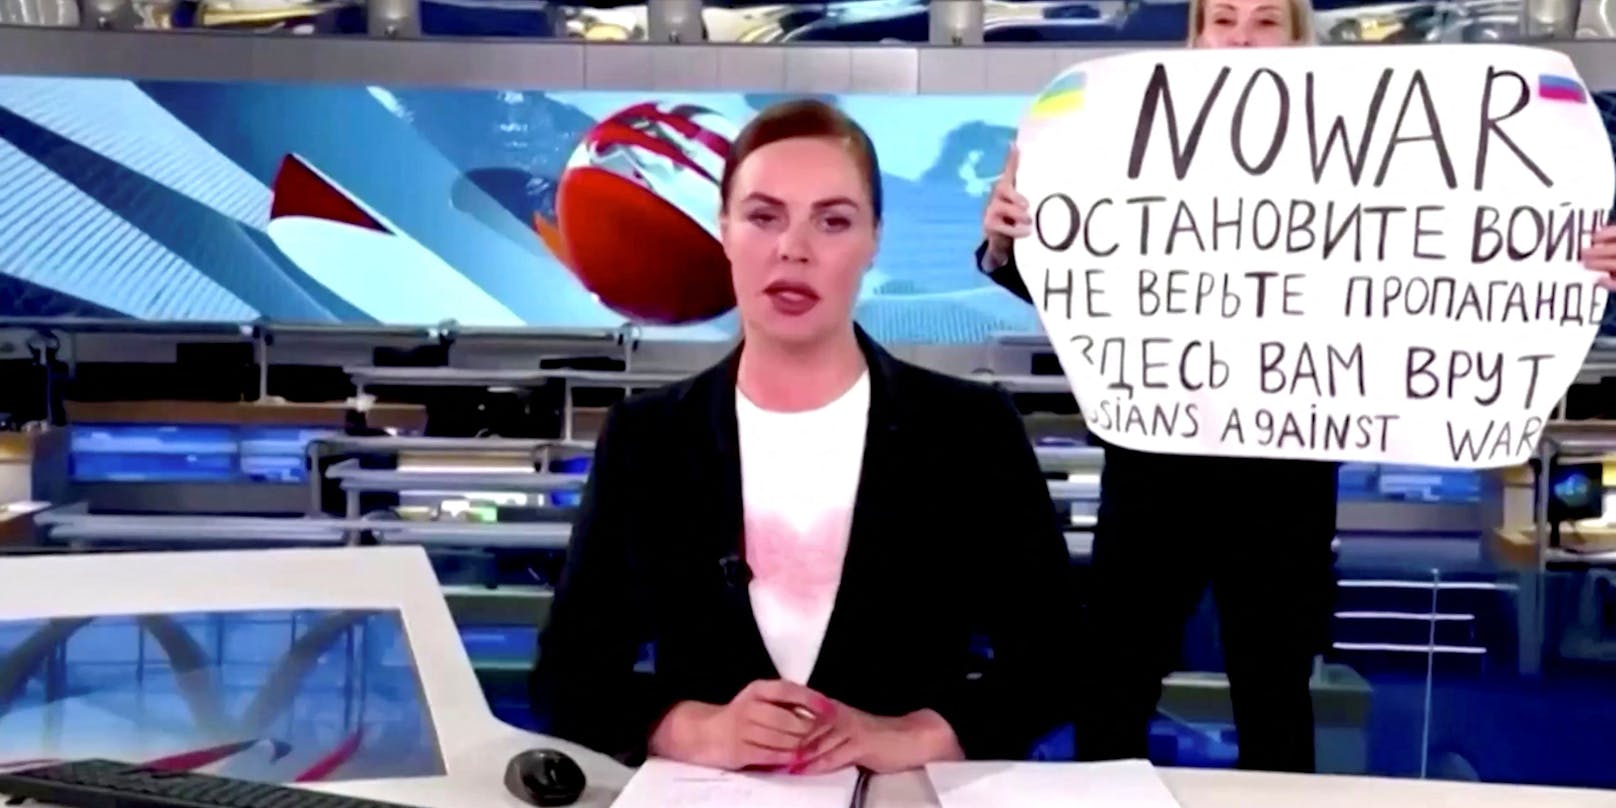 "Stoppt den Krieg. Glaubt der Propaganda nicht. Hier werdet ihr belogen": Eine TV-Journalistin nutzte die Gelegenheit und machte auf die Invasion in der Ukraine aufmerksam.